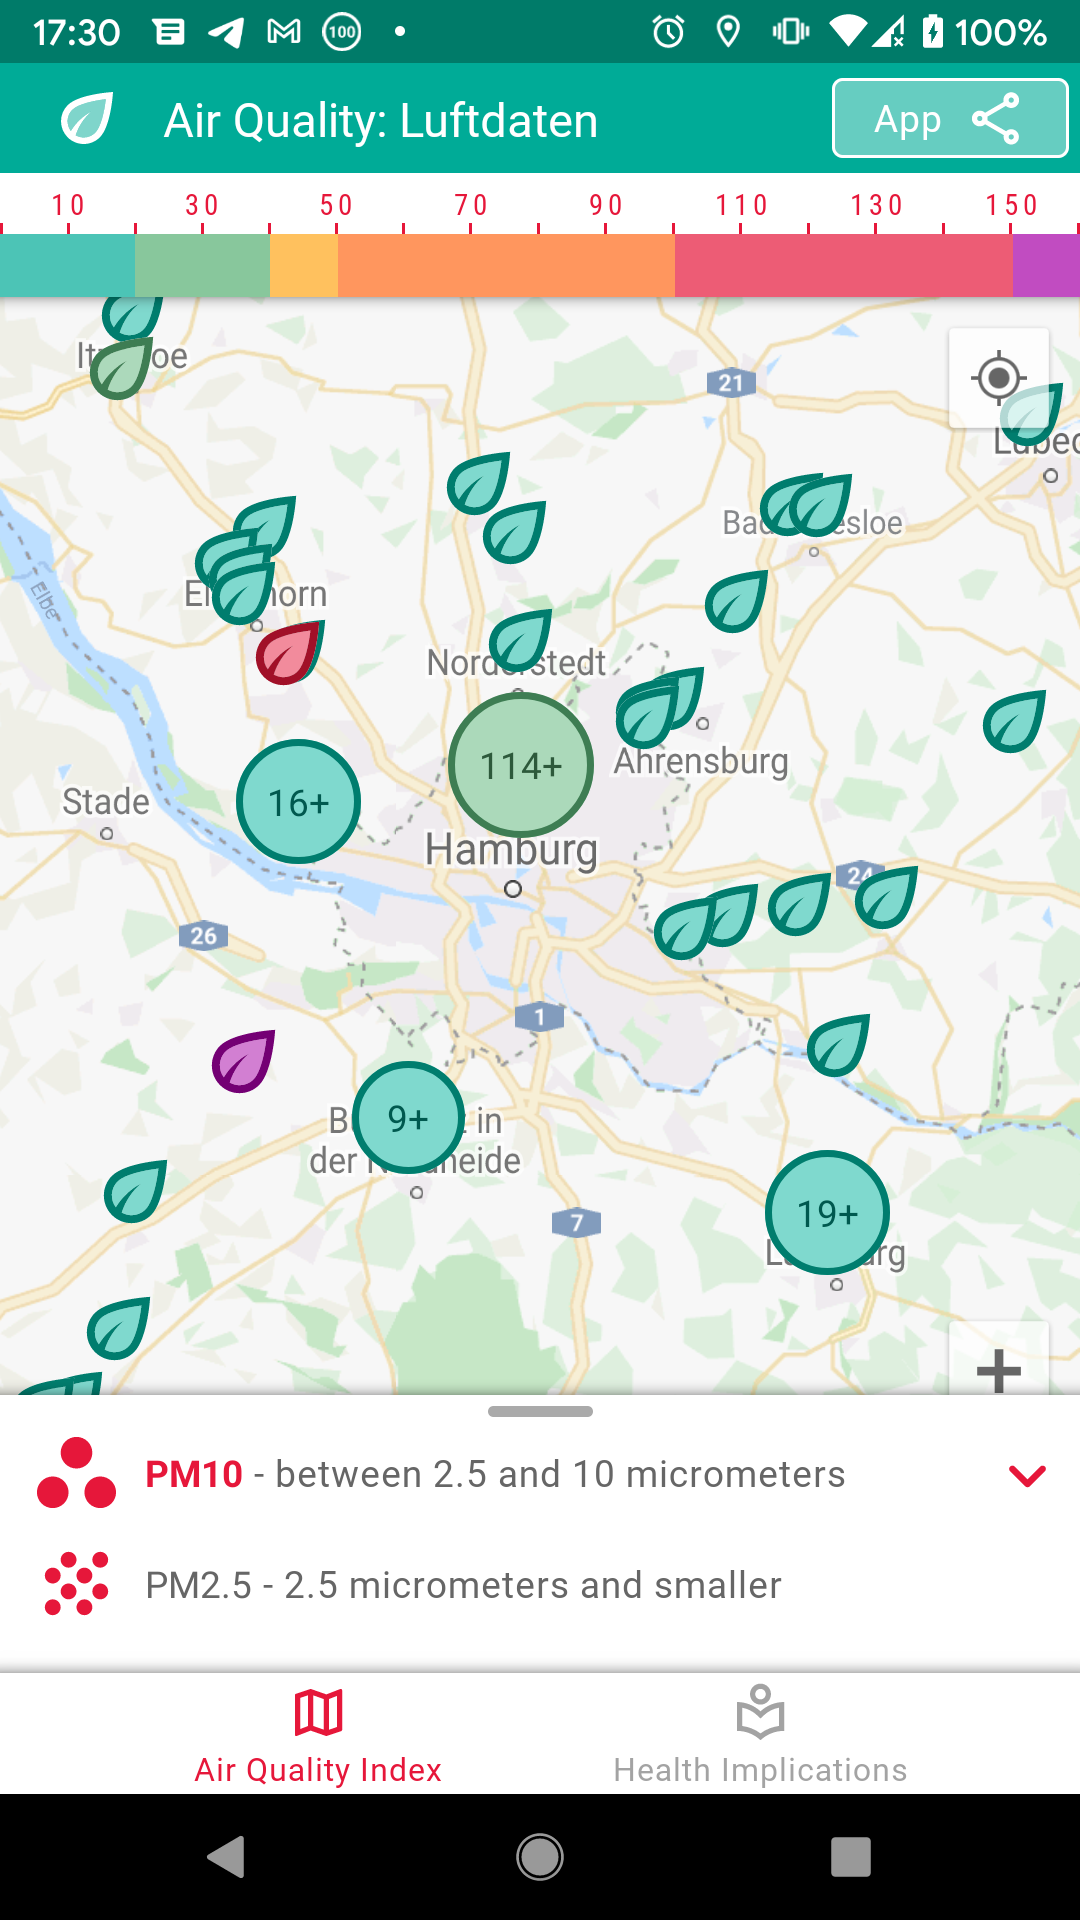 Luftdaten: Air Quality